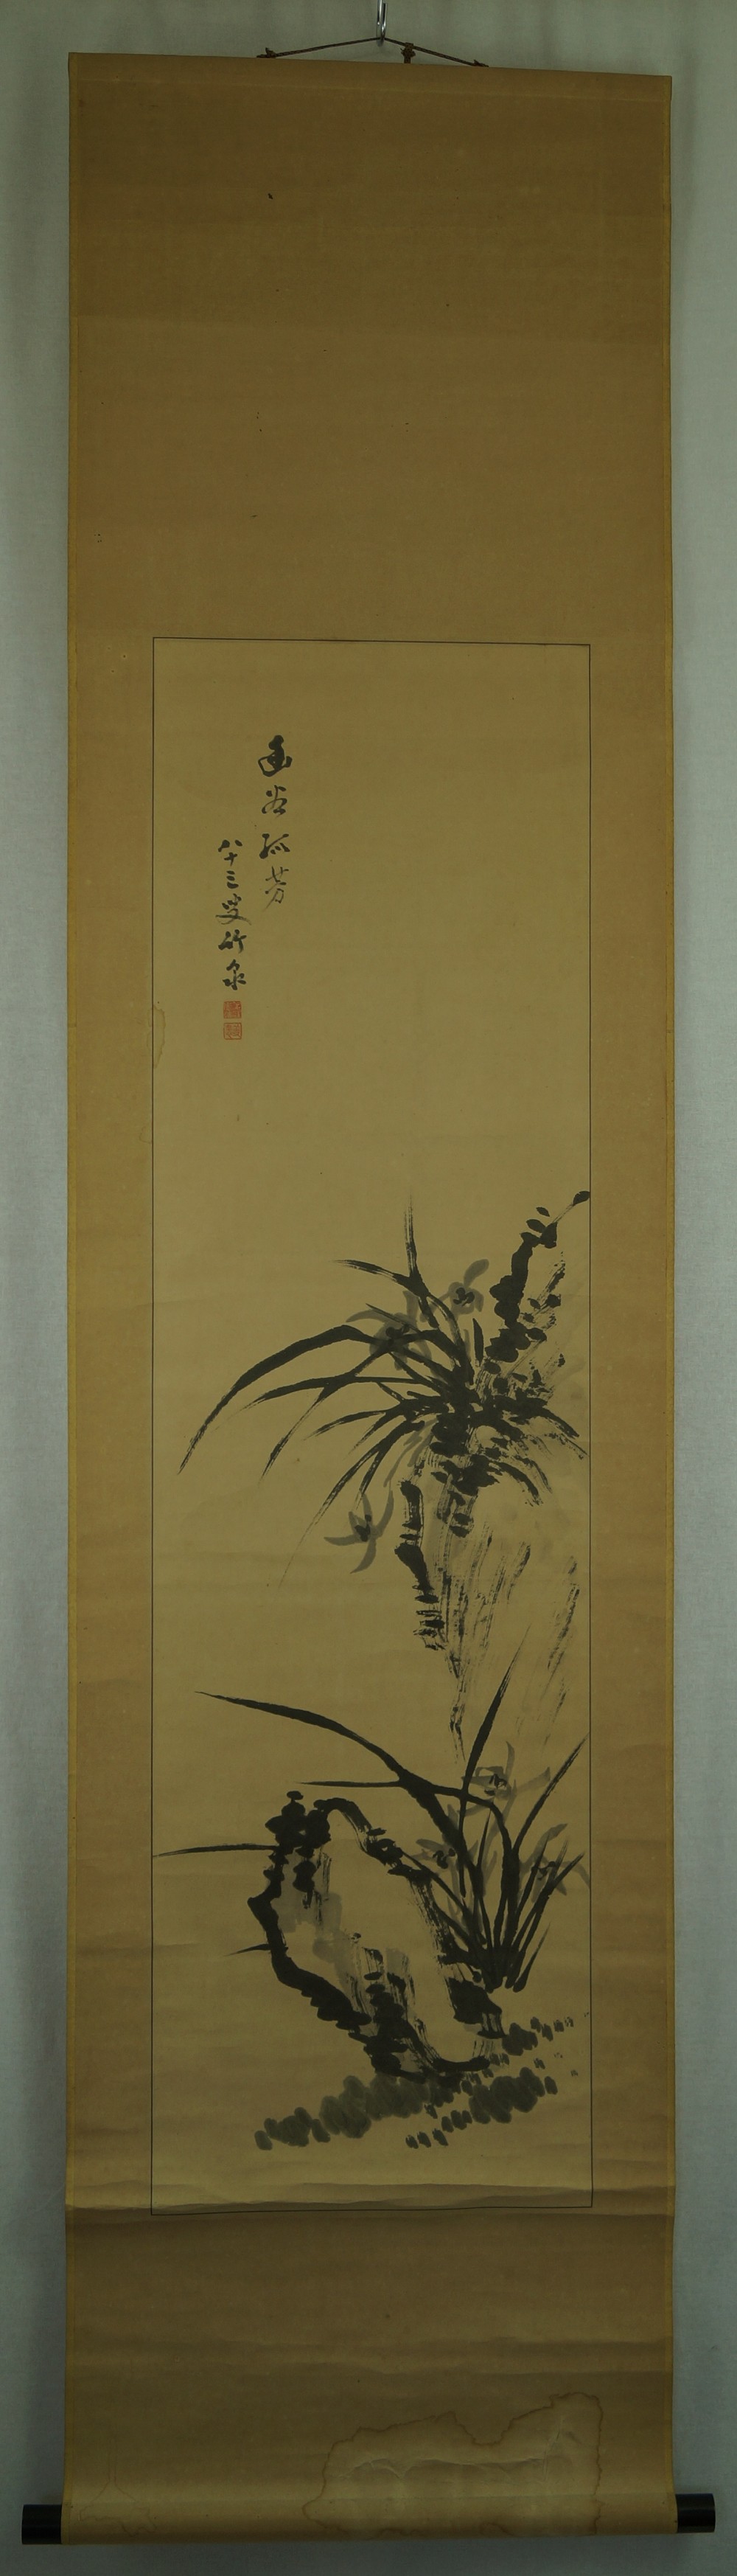 Bambus - Japanisches Rollbild (Kakejiku, Kakemono)